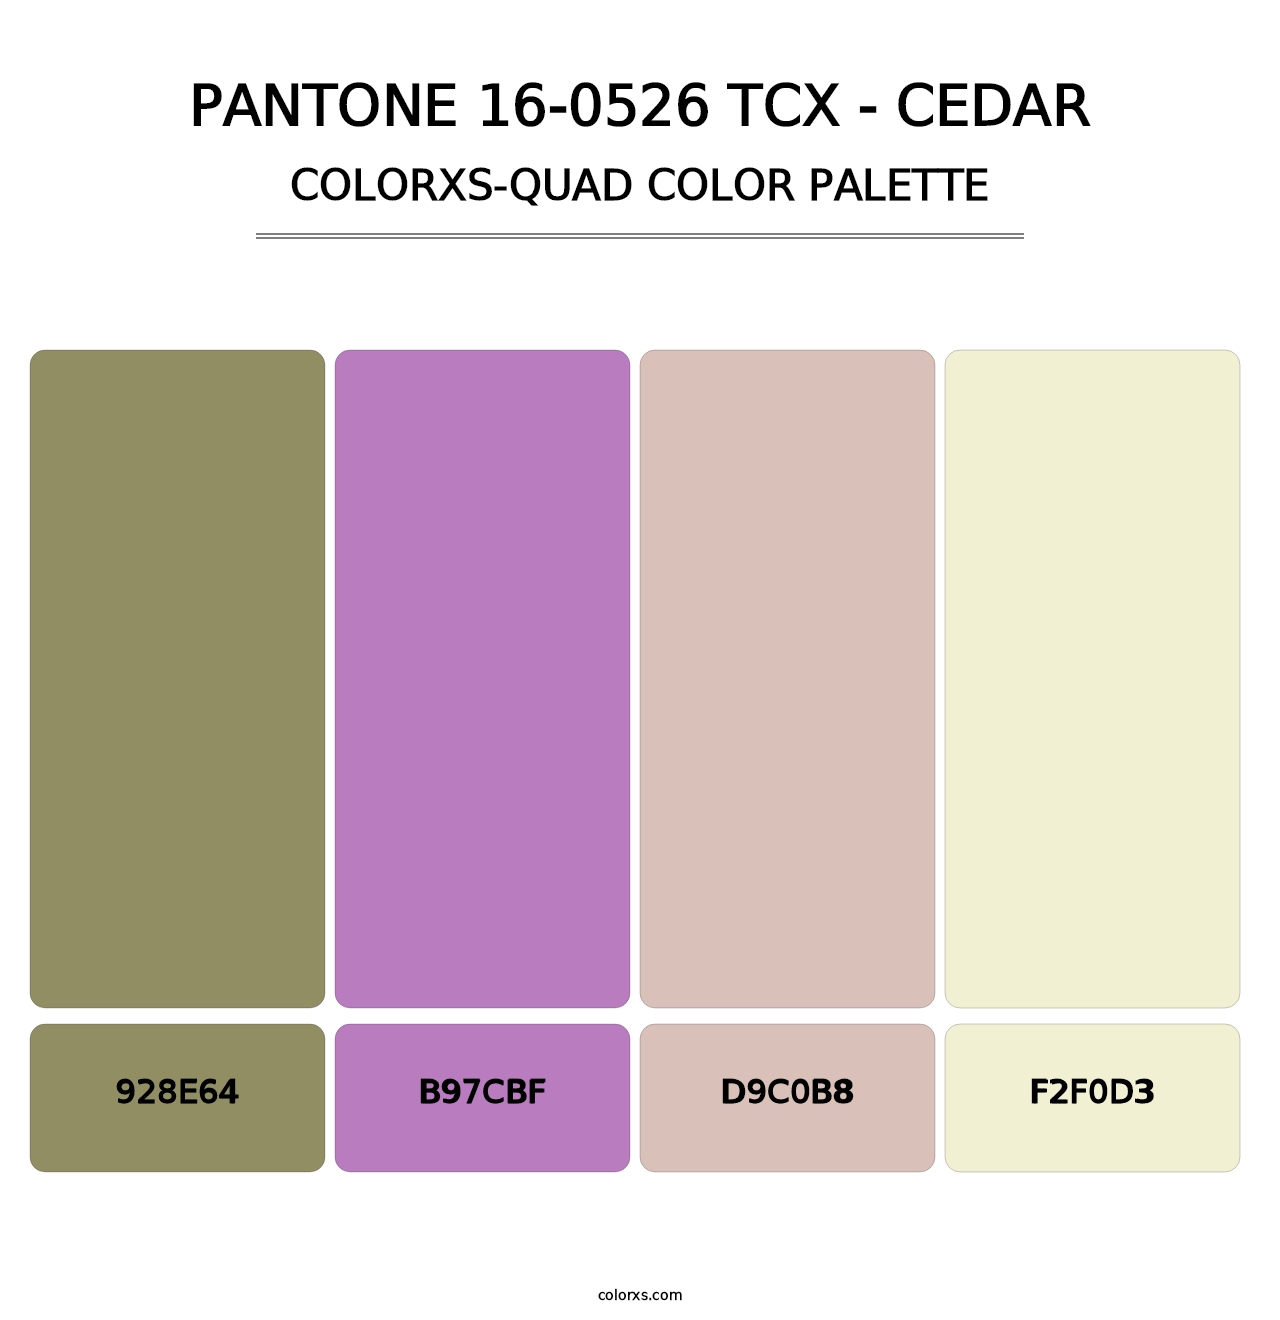 PANTONE 16-0526 TCX - Cedar - Colorxs Quad Palette